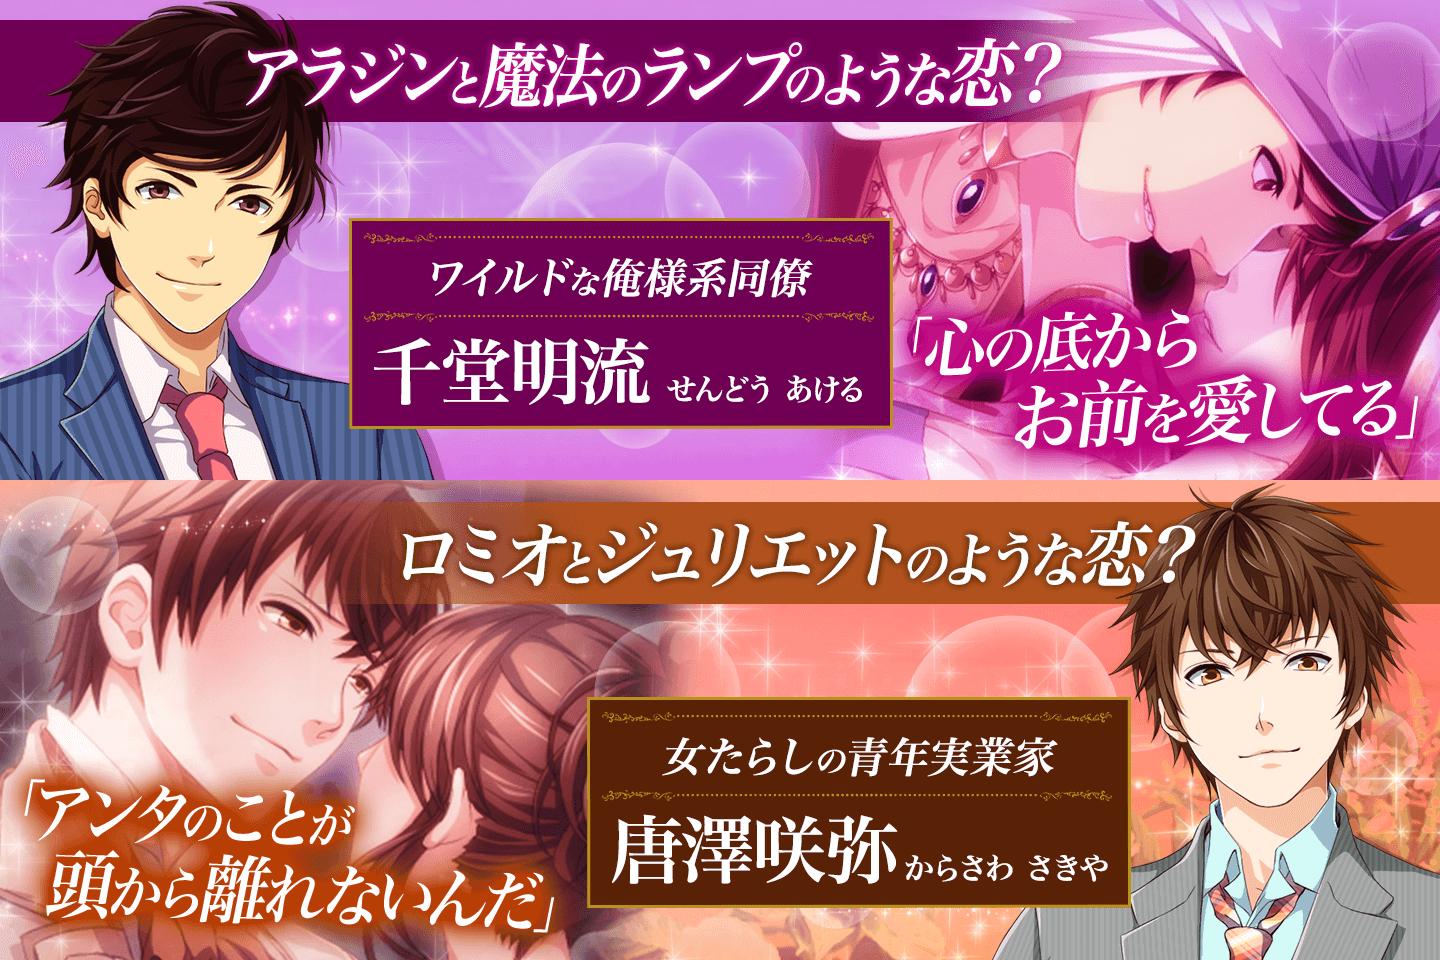 王子様と魔法のキス 恋愛ゲーム 無料 女性向け For Android Apk Download